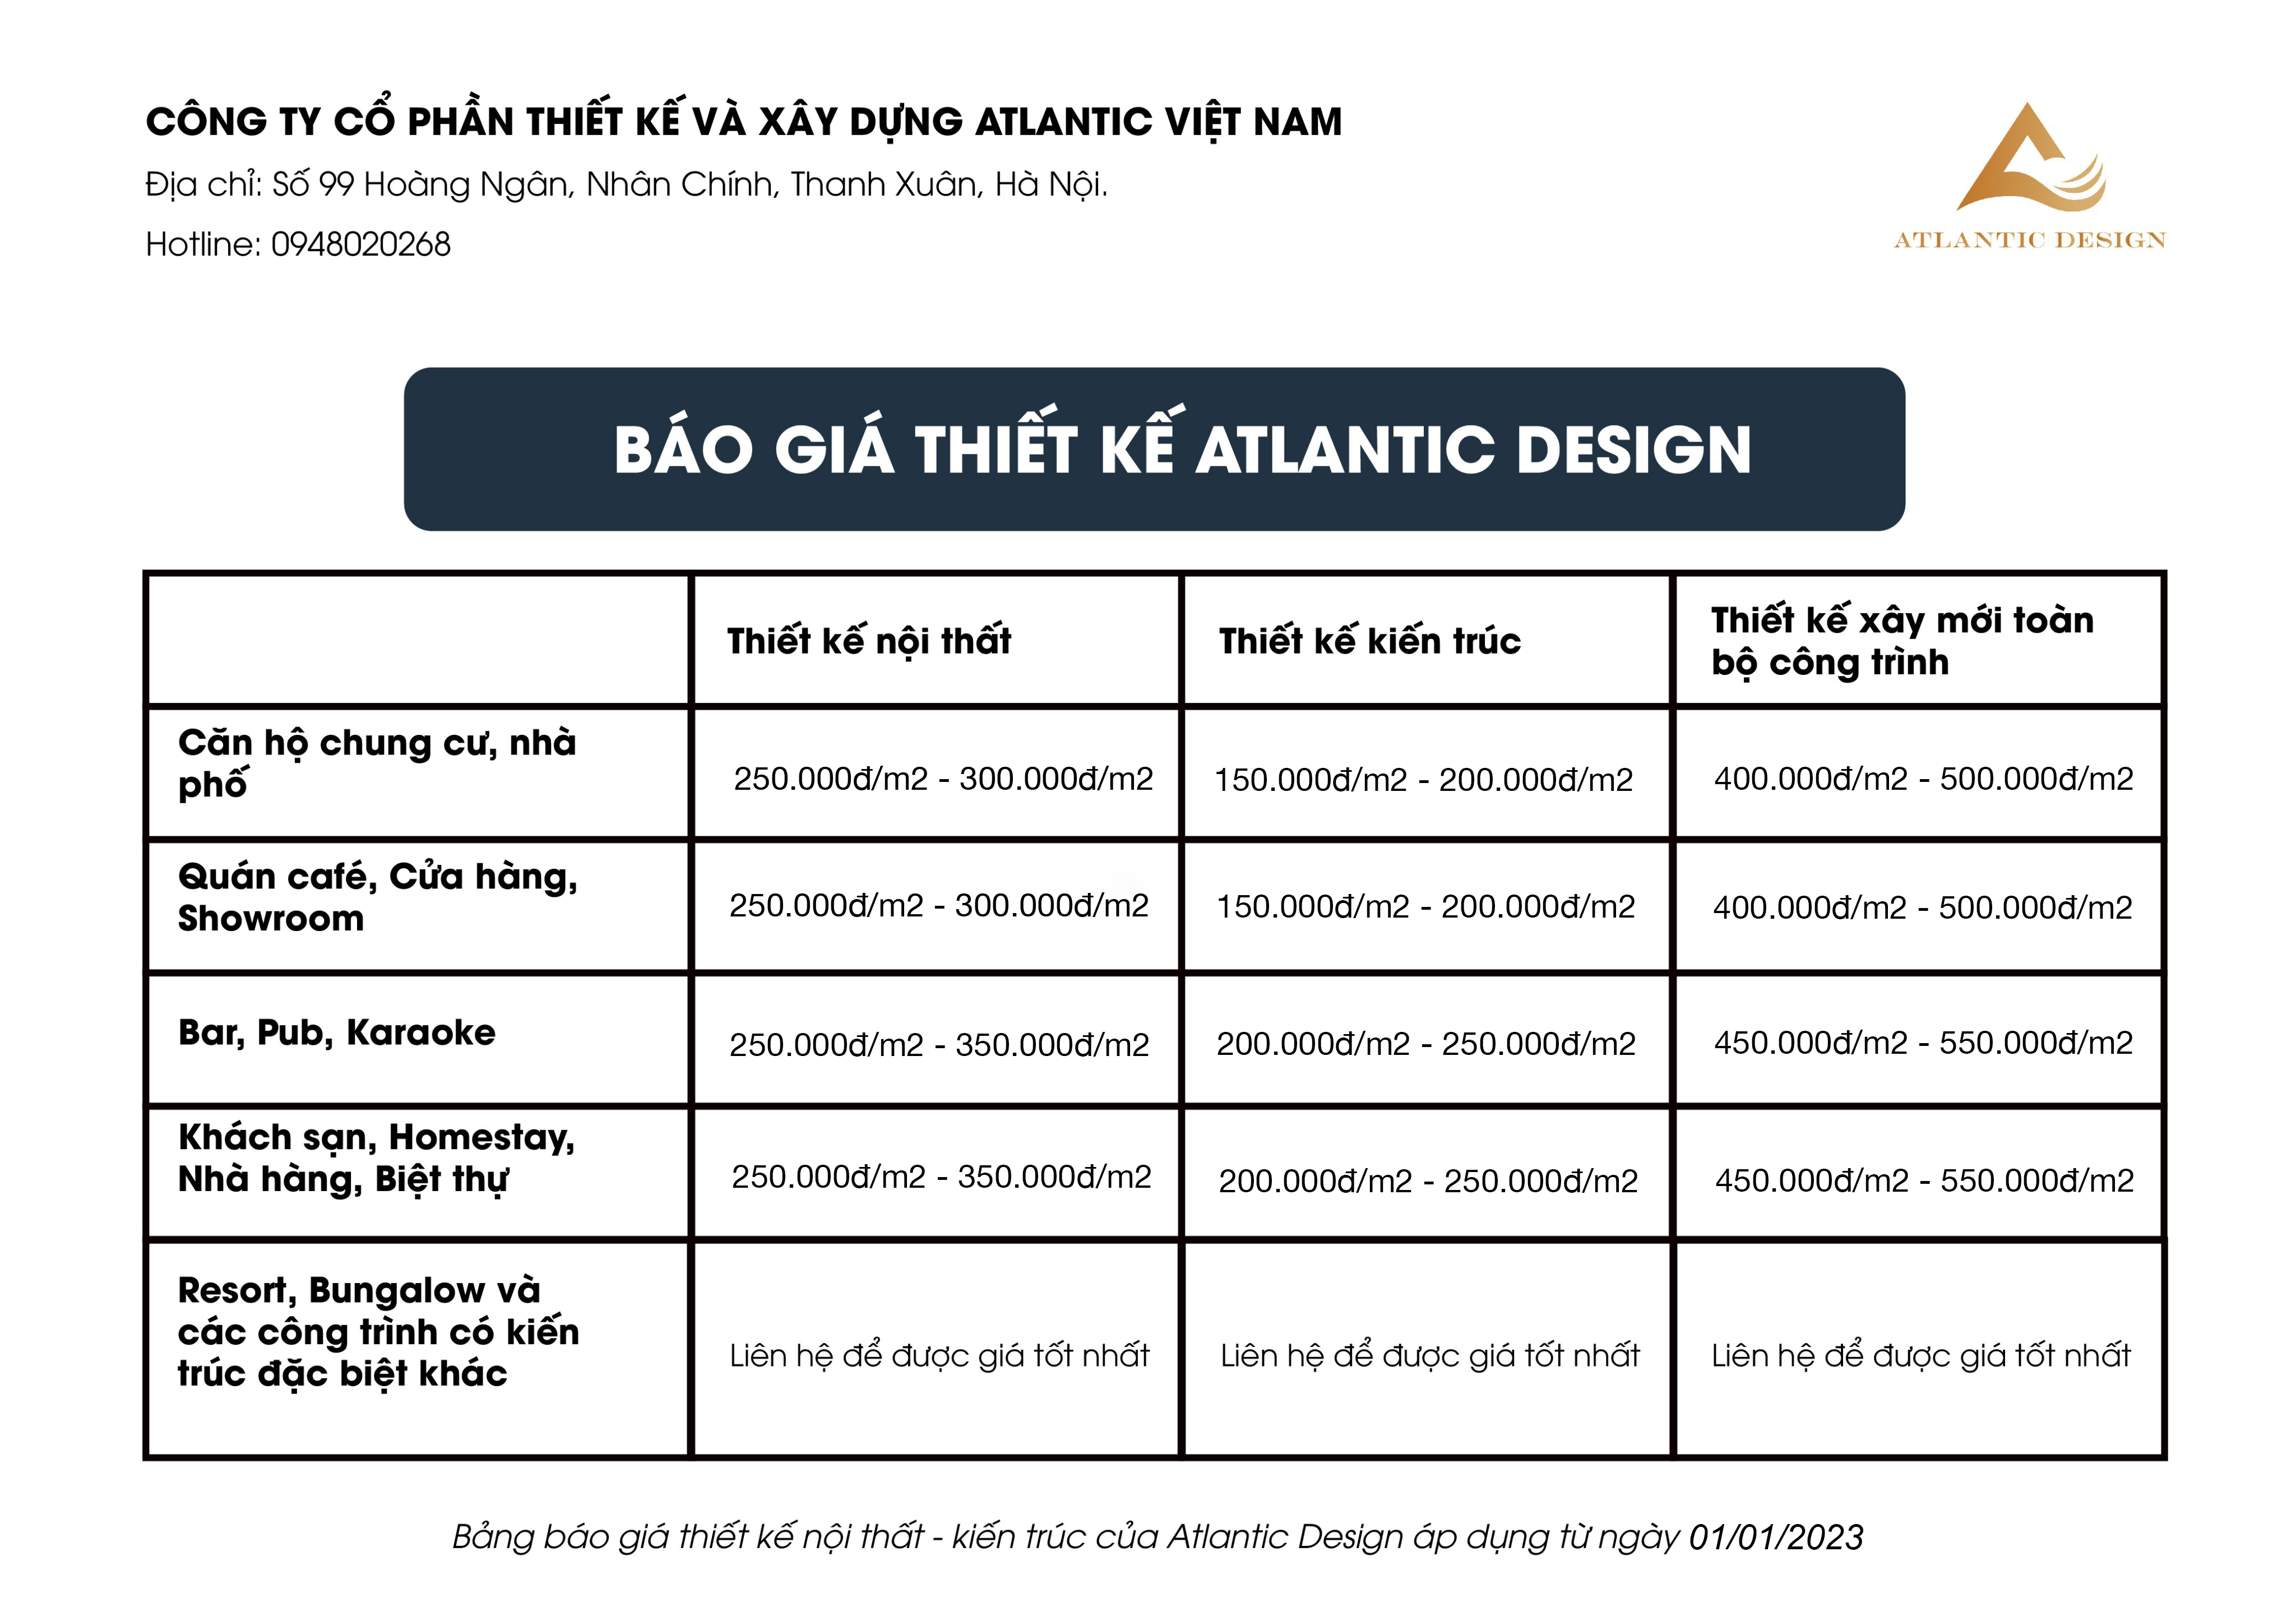 Bảng giá thiết kế Atlantic Design kể từ ngày 01/01/2023